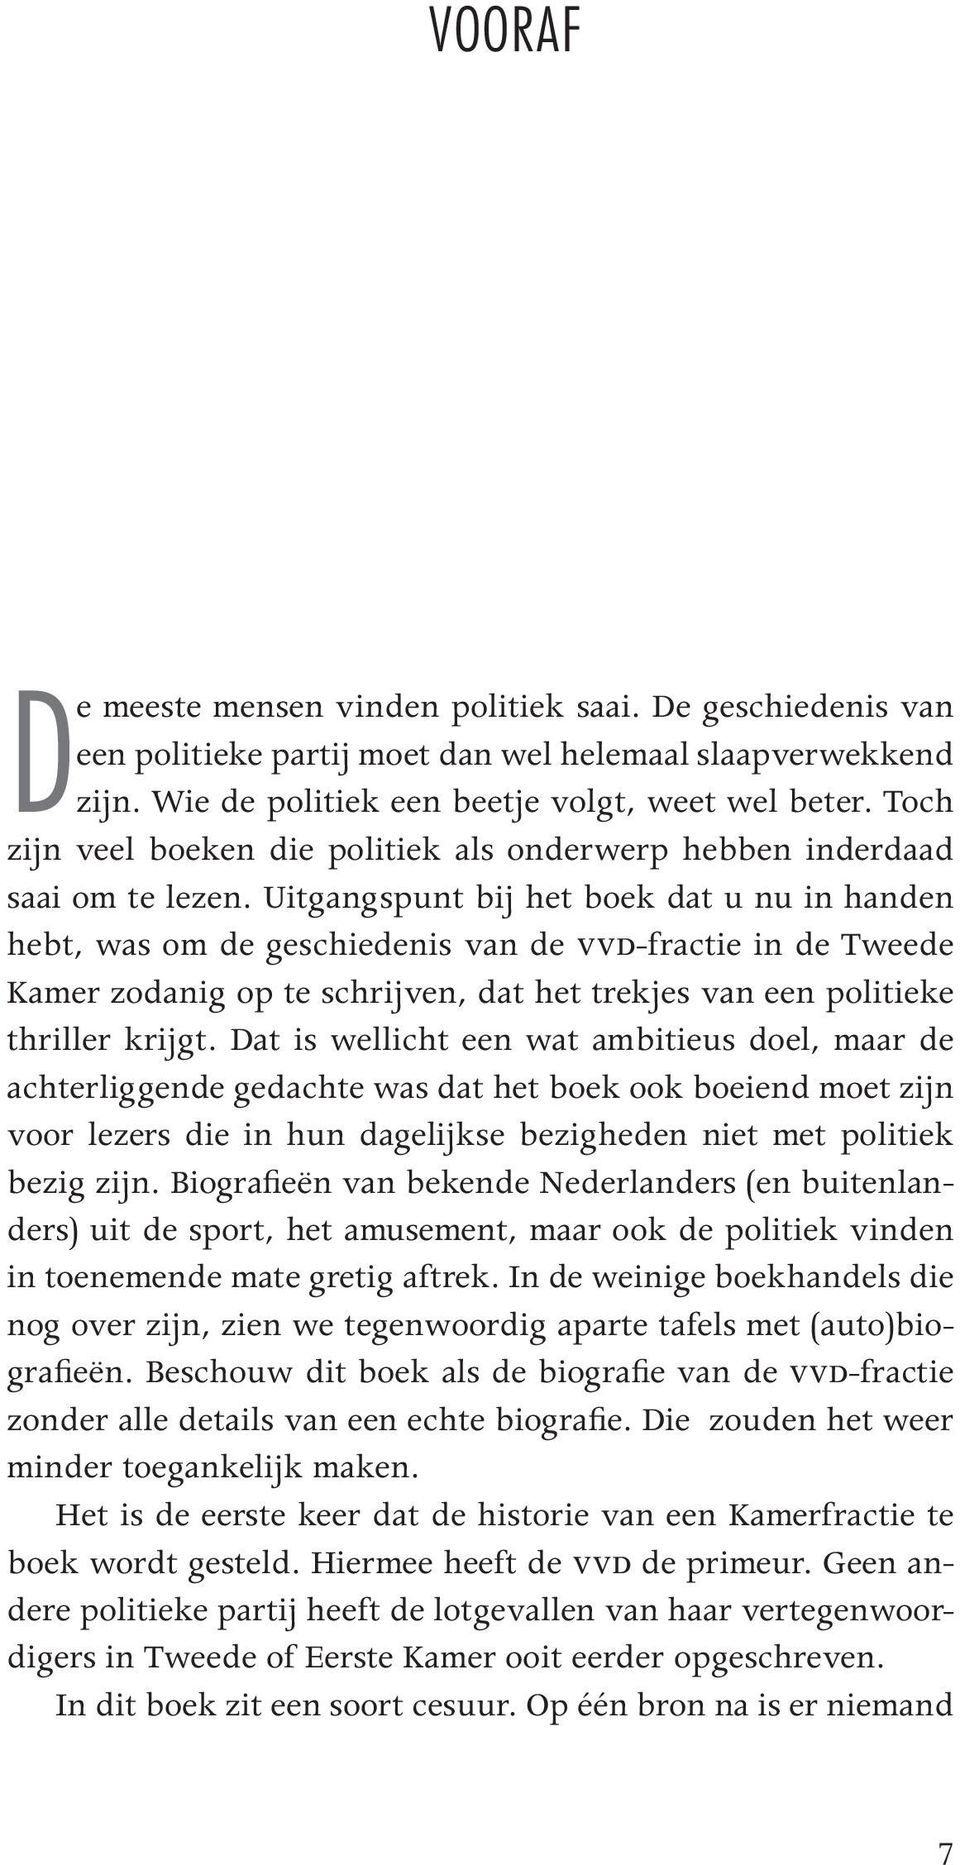 Uitgangspunt bij het boek dat u nu in handen hebt, was om de geschiedenis van de VVD-fractie in de Tweede Kamer zodanig op te schrijven, dat het trekjes van een politieke thriller krijgt.